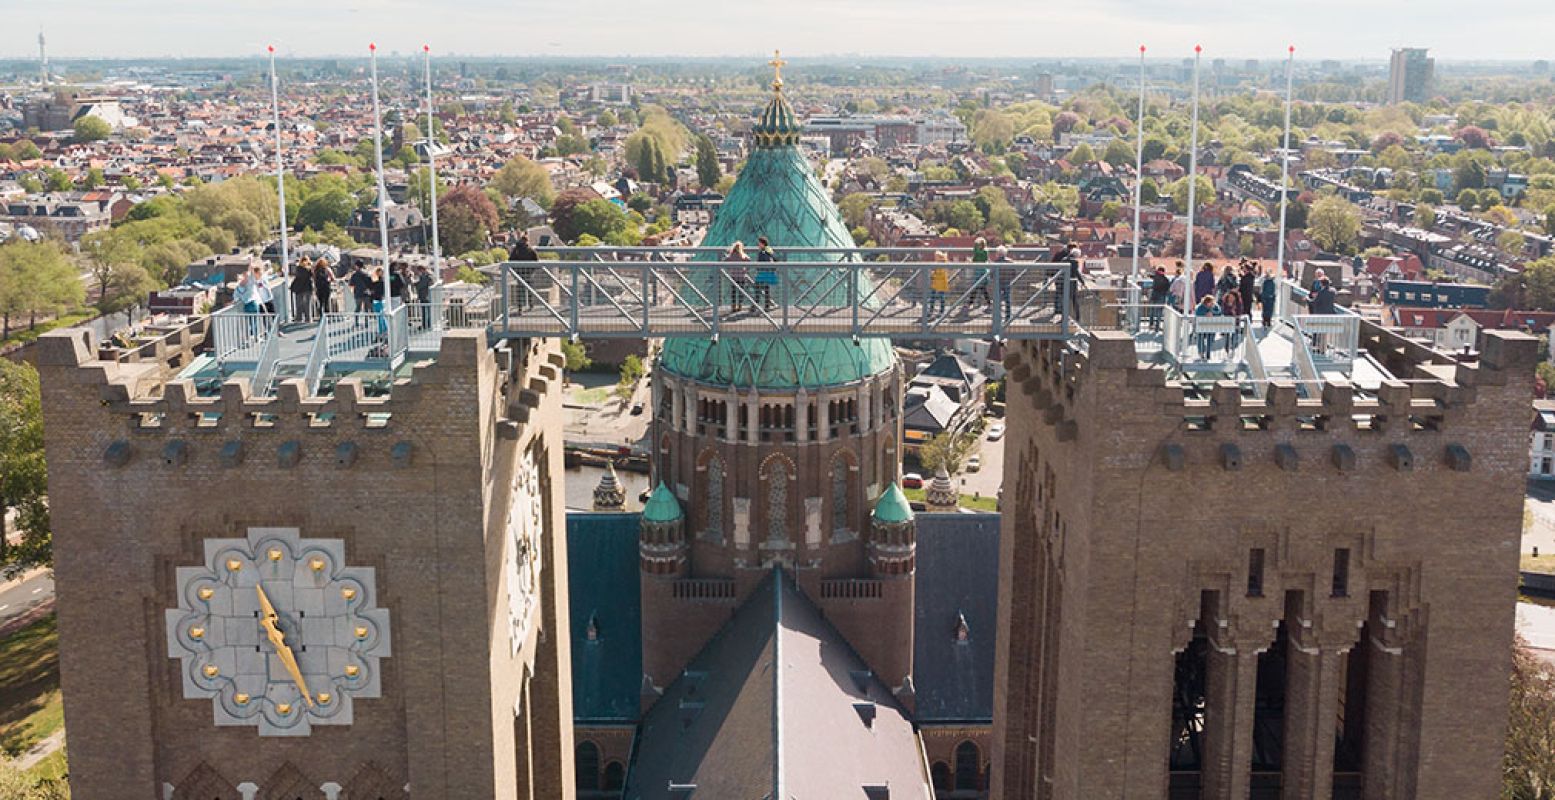 Durf jij tussen de twee torens van Koepel Kathedraal Haarlem te lopen? Foto: Klim naar het licht